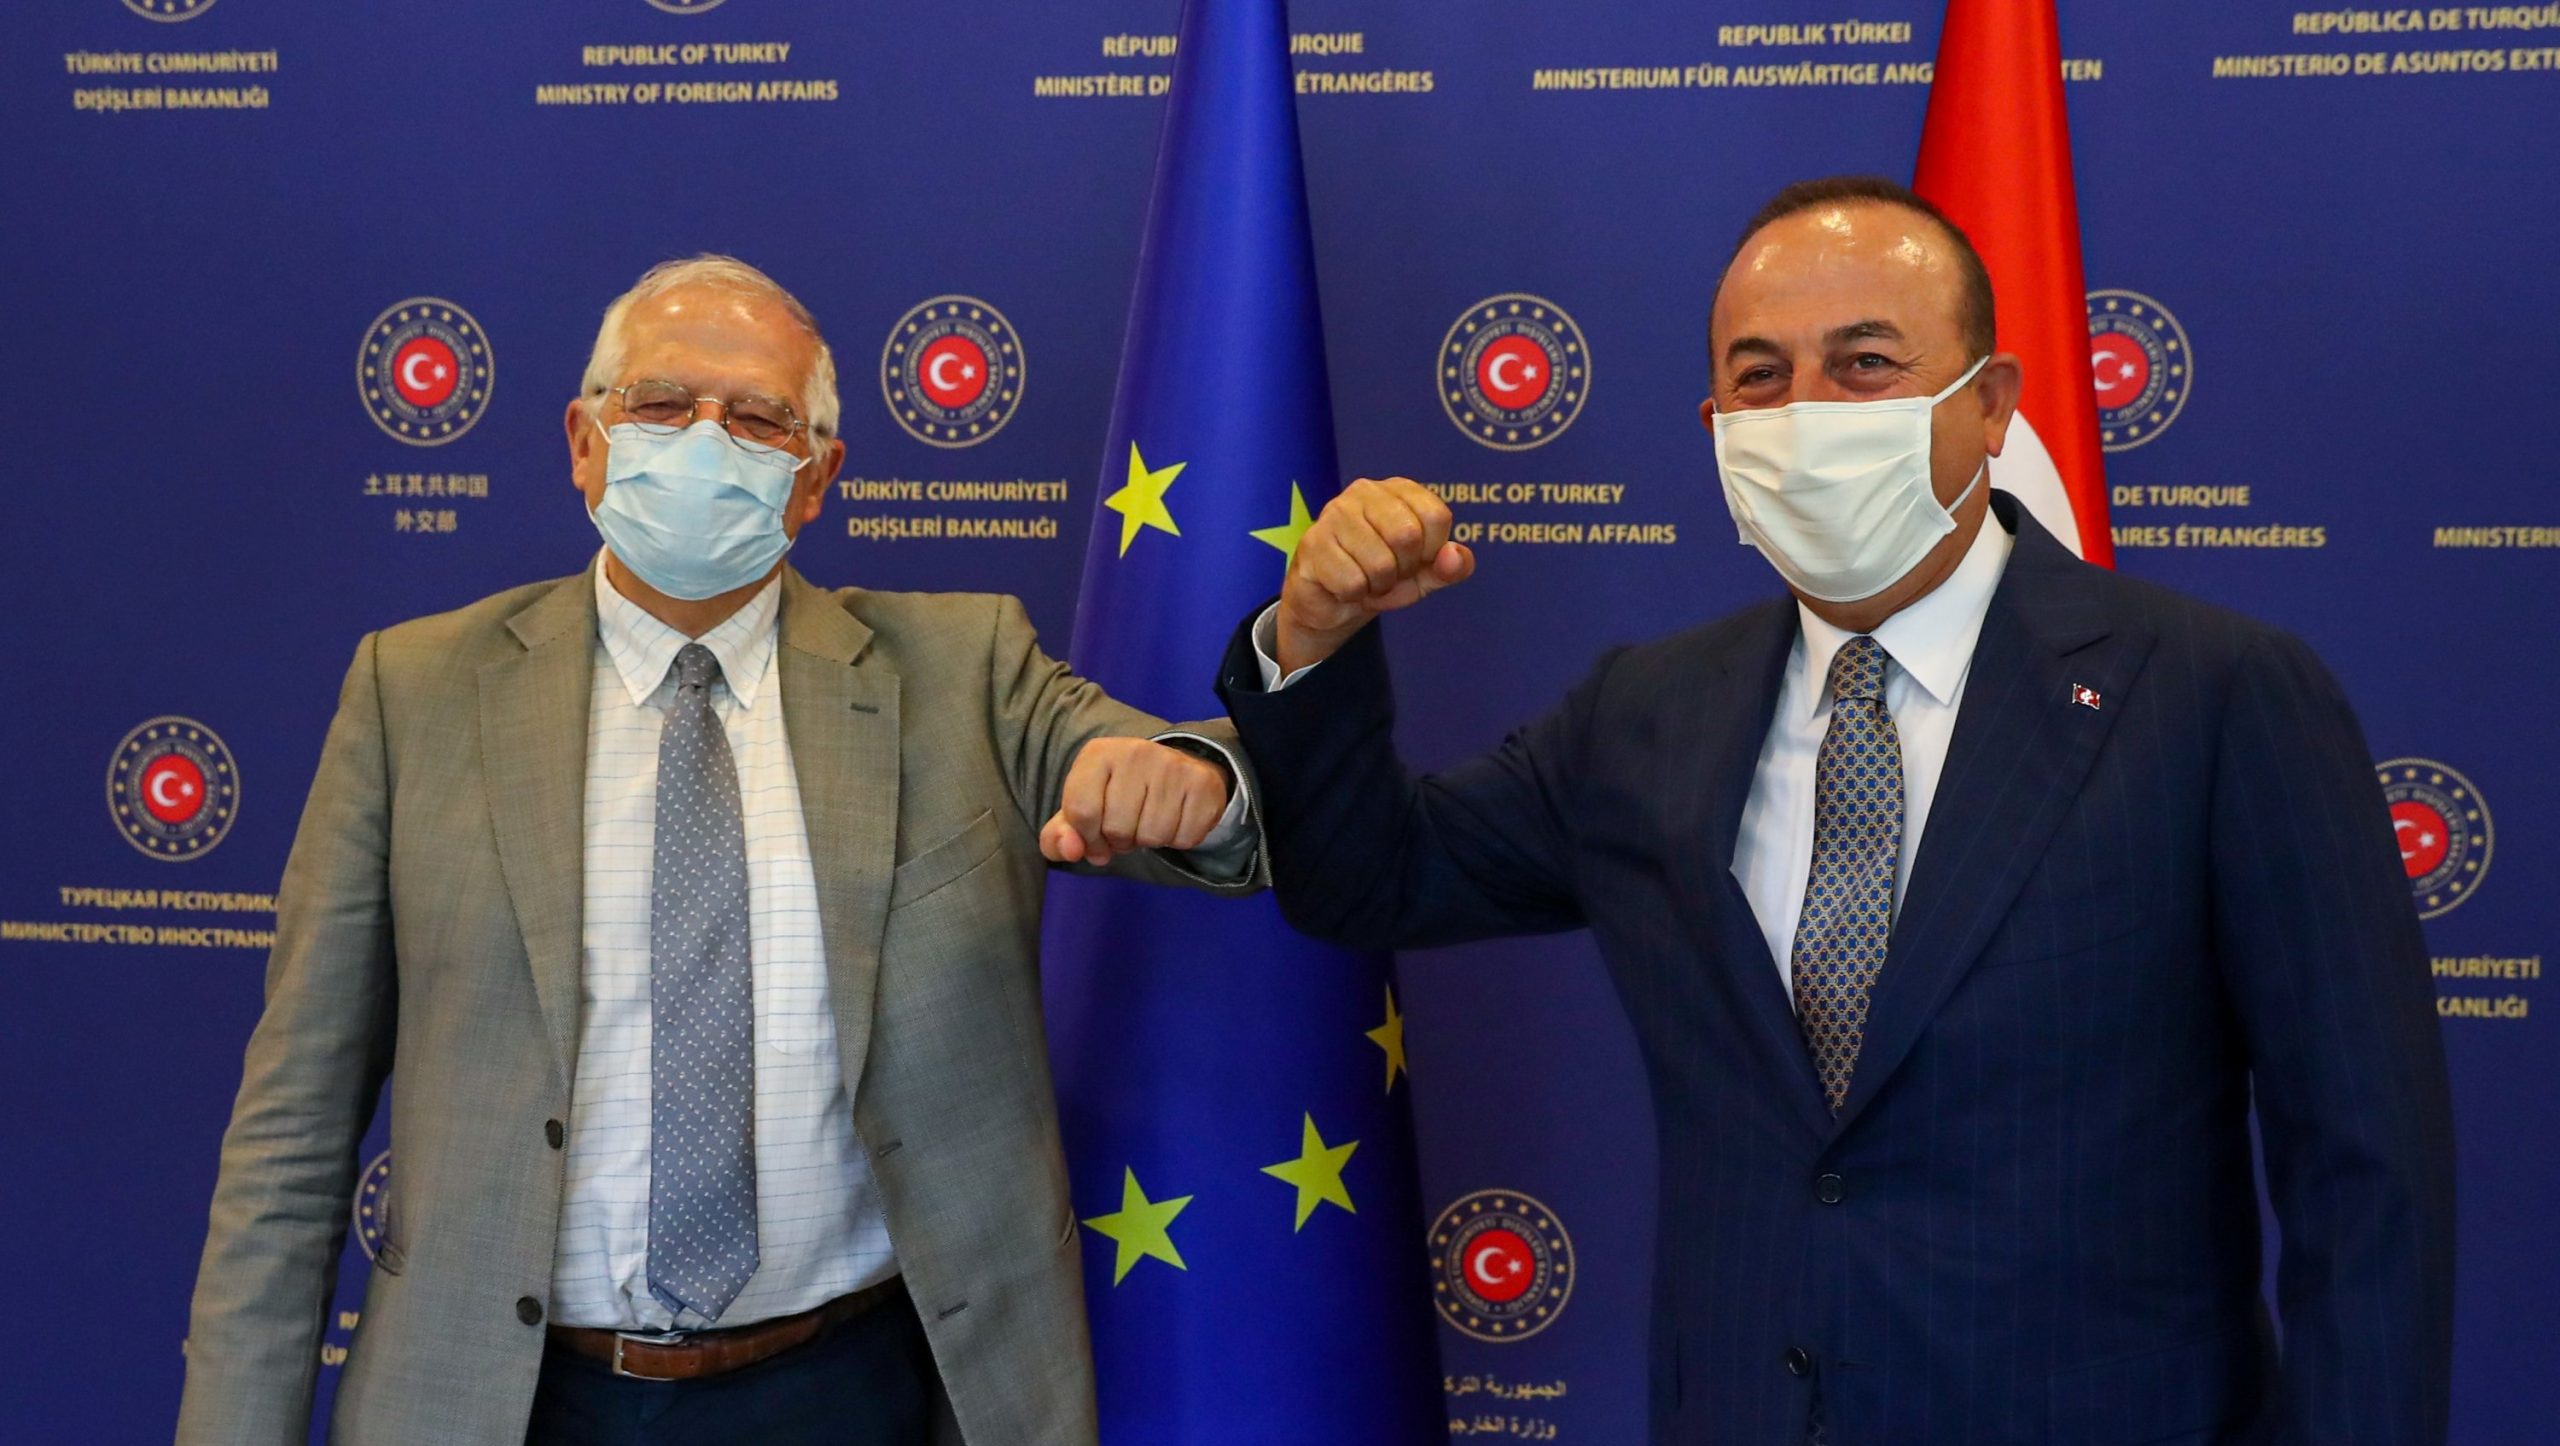 Μ.Τσαβούσογλου: Συναντήσεις με Σ.Μισέλ και Ζ.Μπορέλ για τις σχέσεις Τουρκίας-ΕΕ